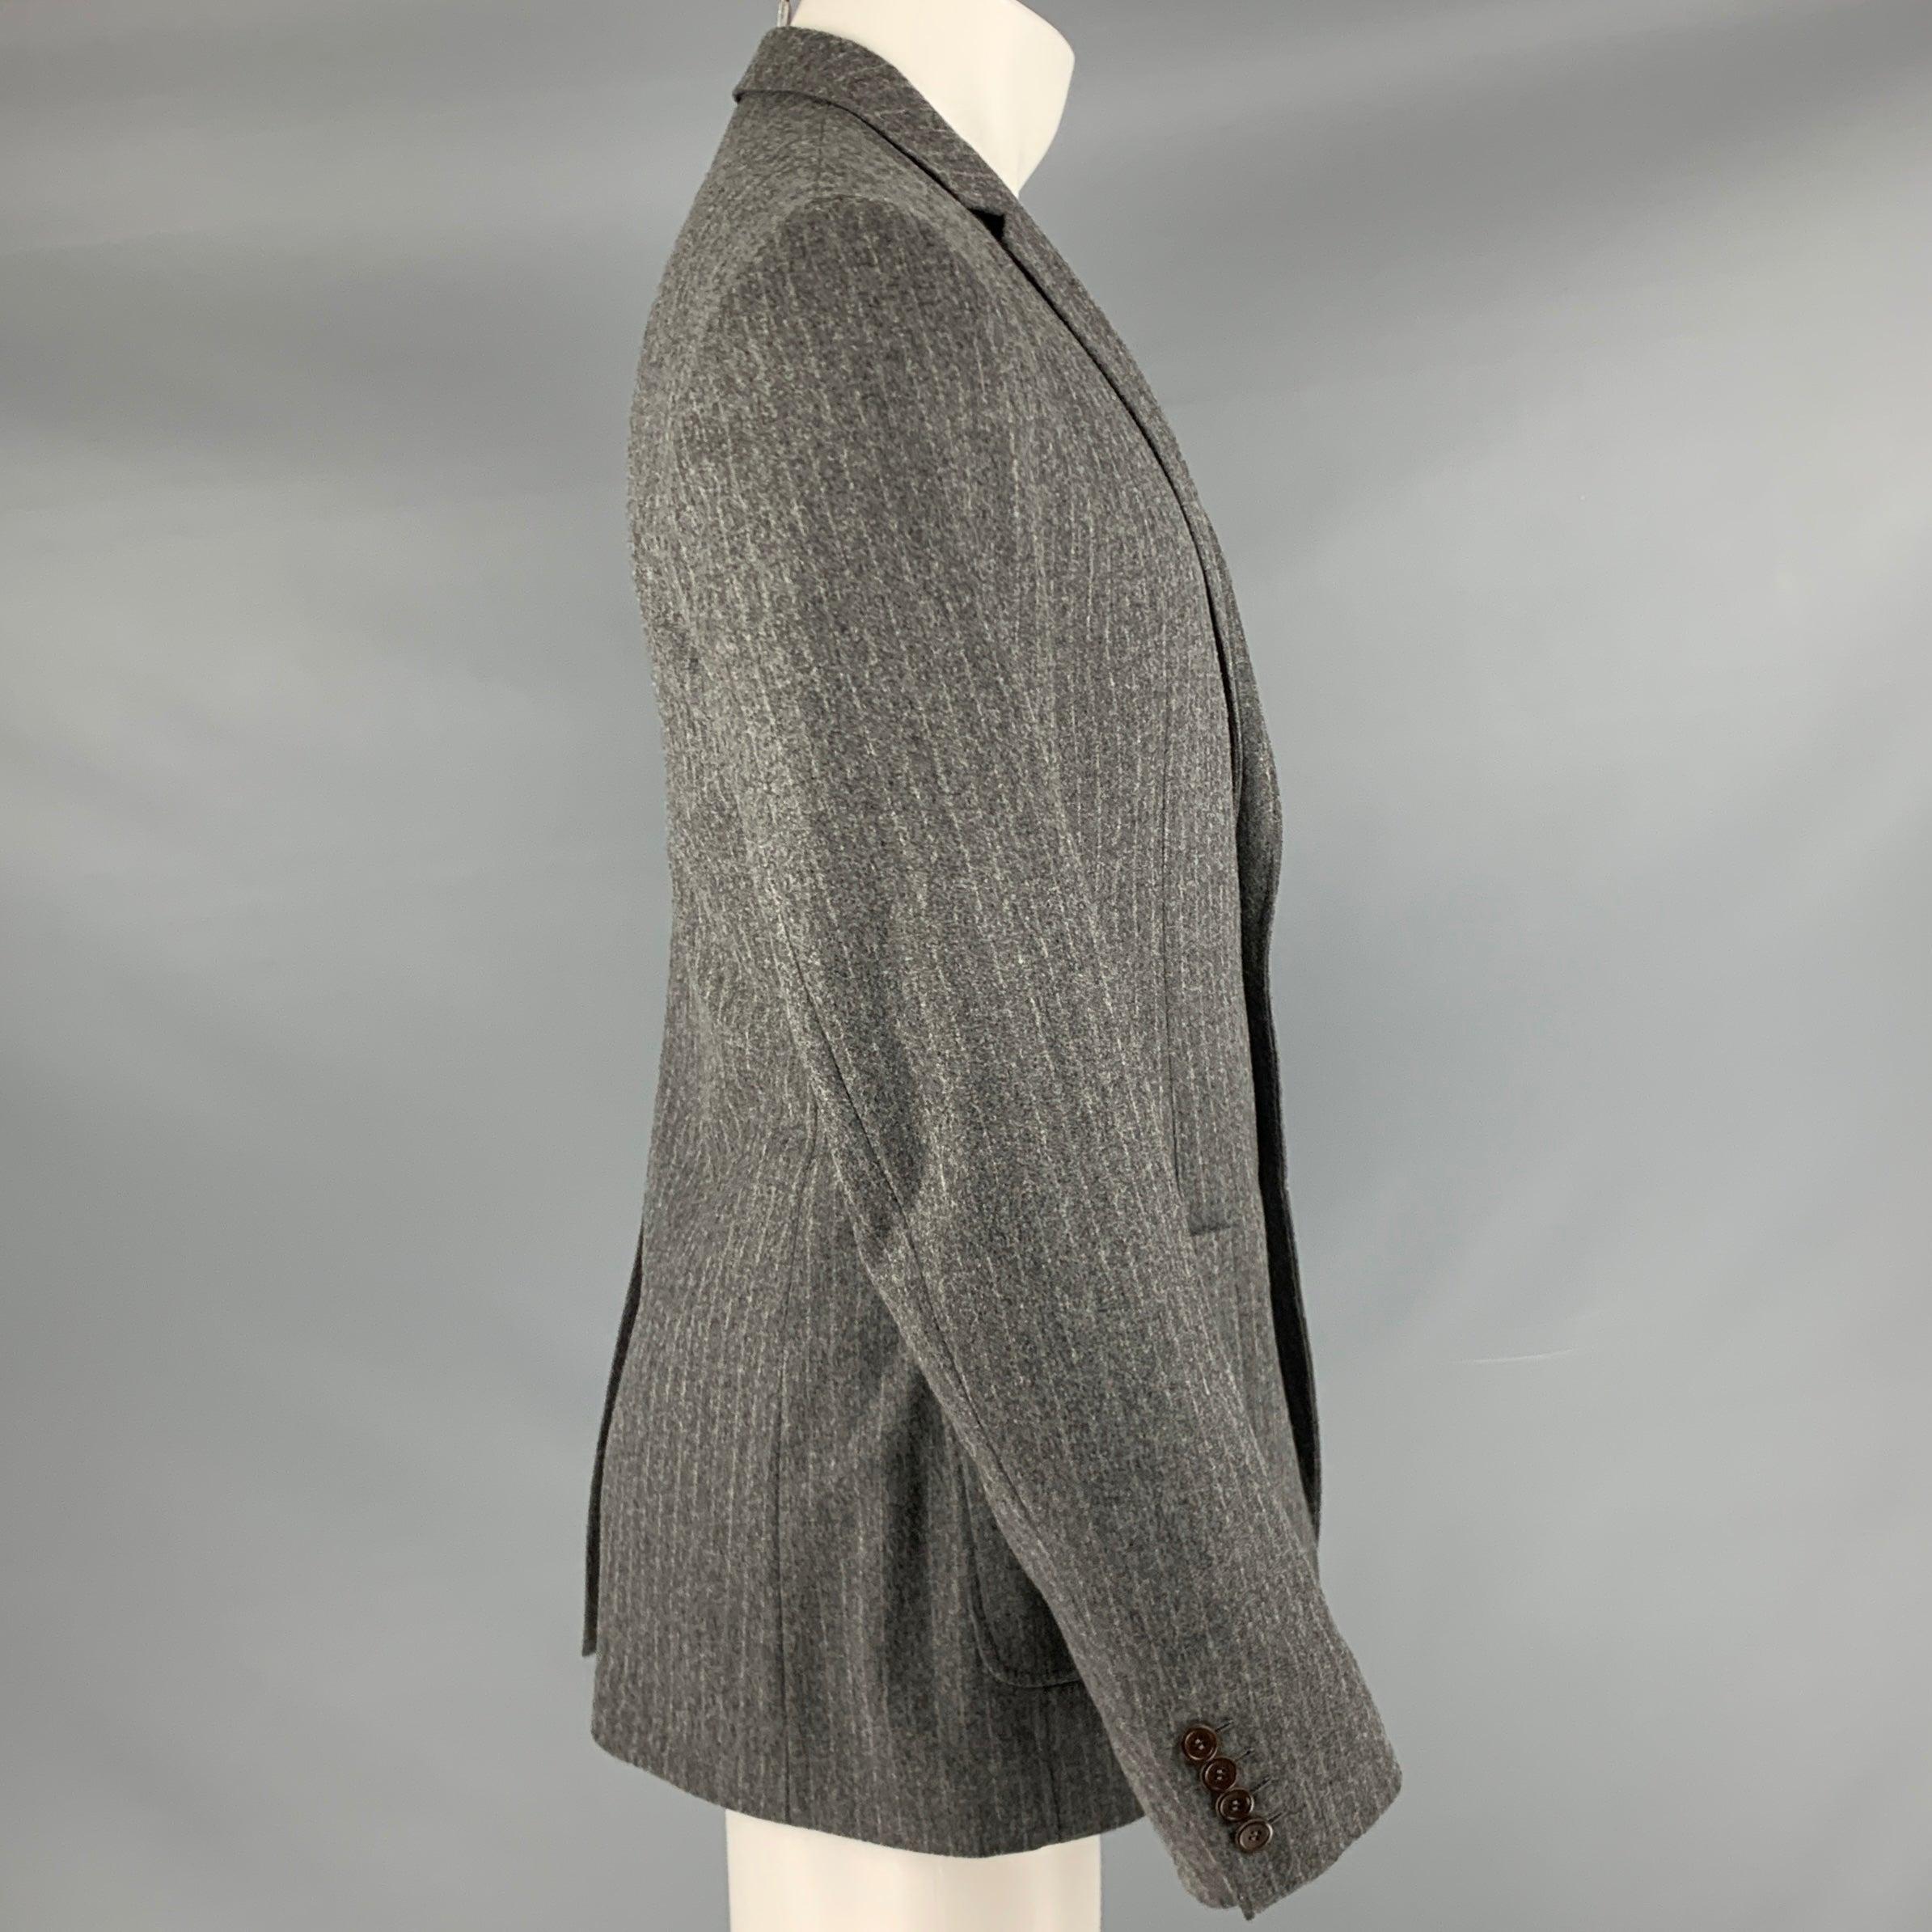 Manteau de sport D&G by DOLCE & GABBANA
dans un
Tissu en laine mélangée grise avec motif à rayures, revers à cran, dos simple ventilé et fermeture à double bouton.Très bon état d'occasion. Signes d'usure sur le bouton du haut. 

Marqué :   IT 50